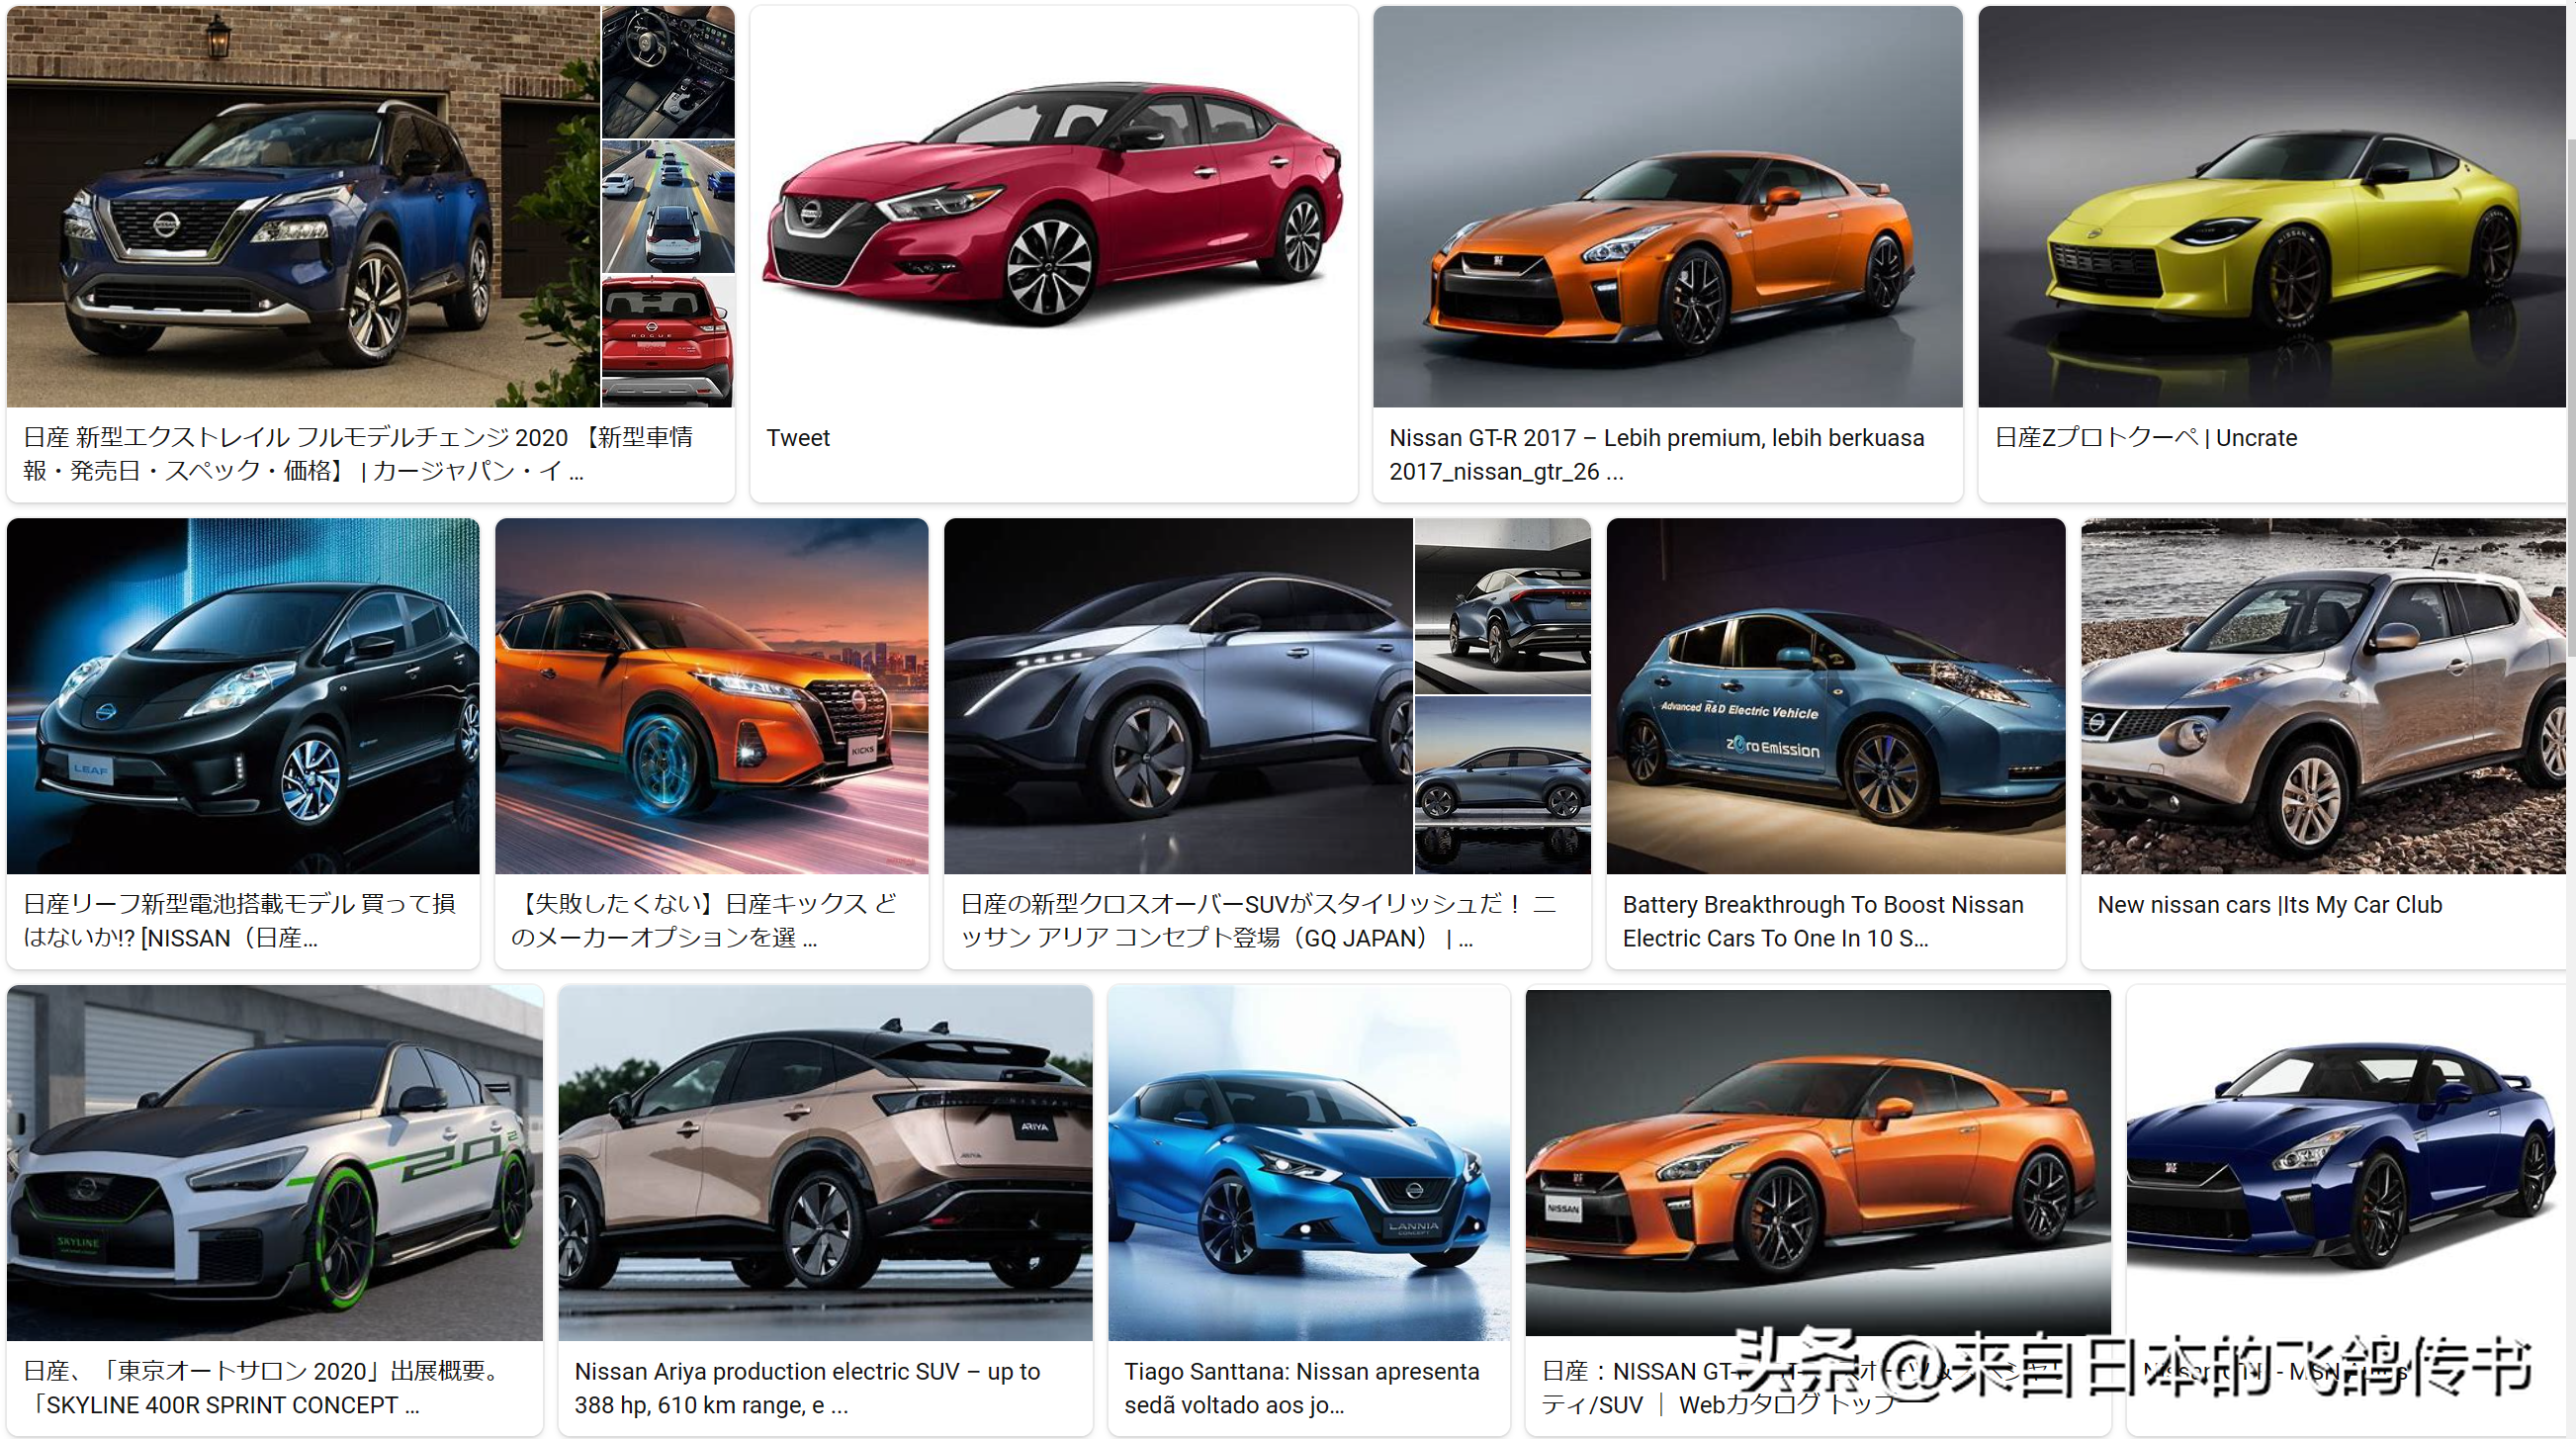 日语常用汽车品牌及其特点